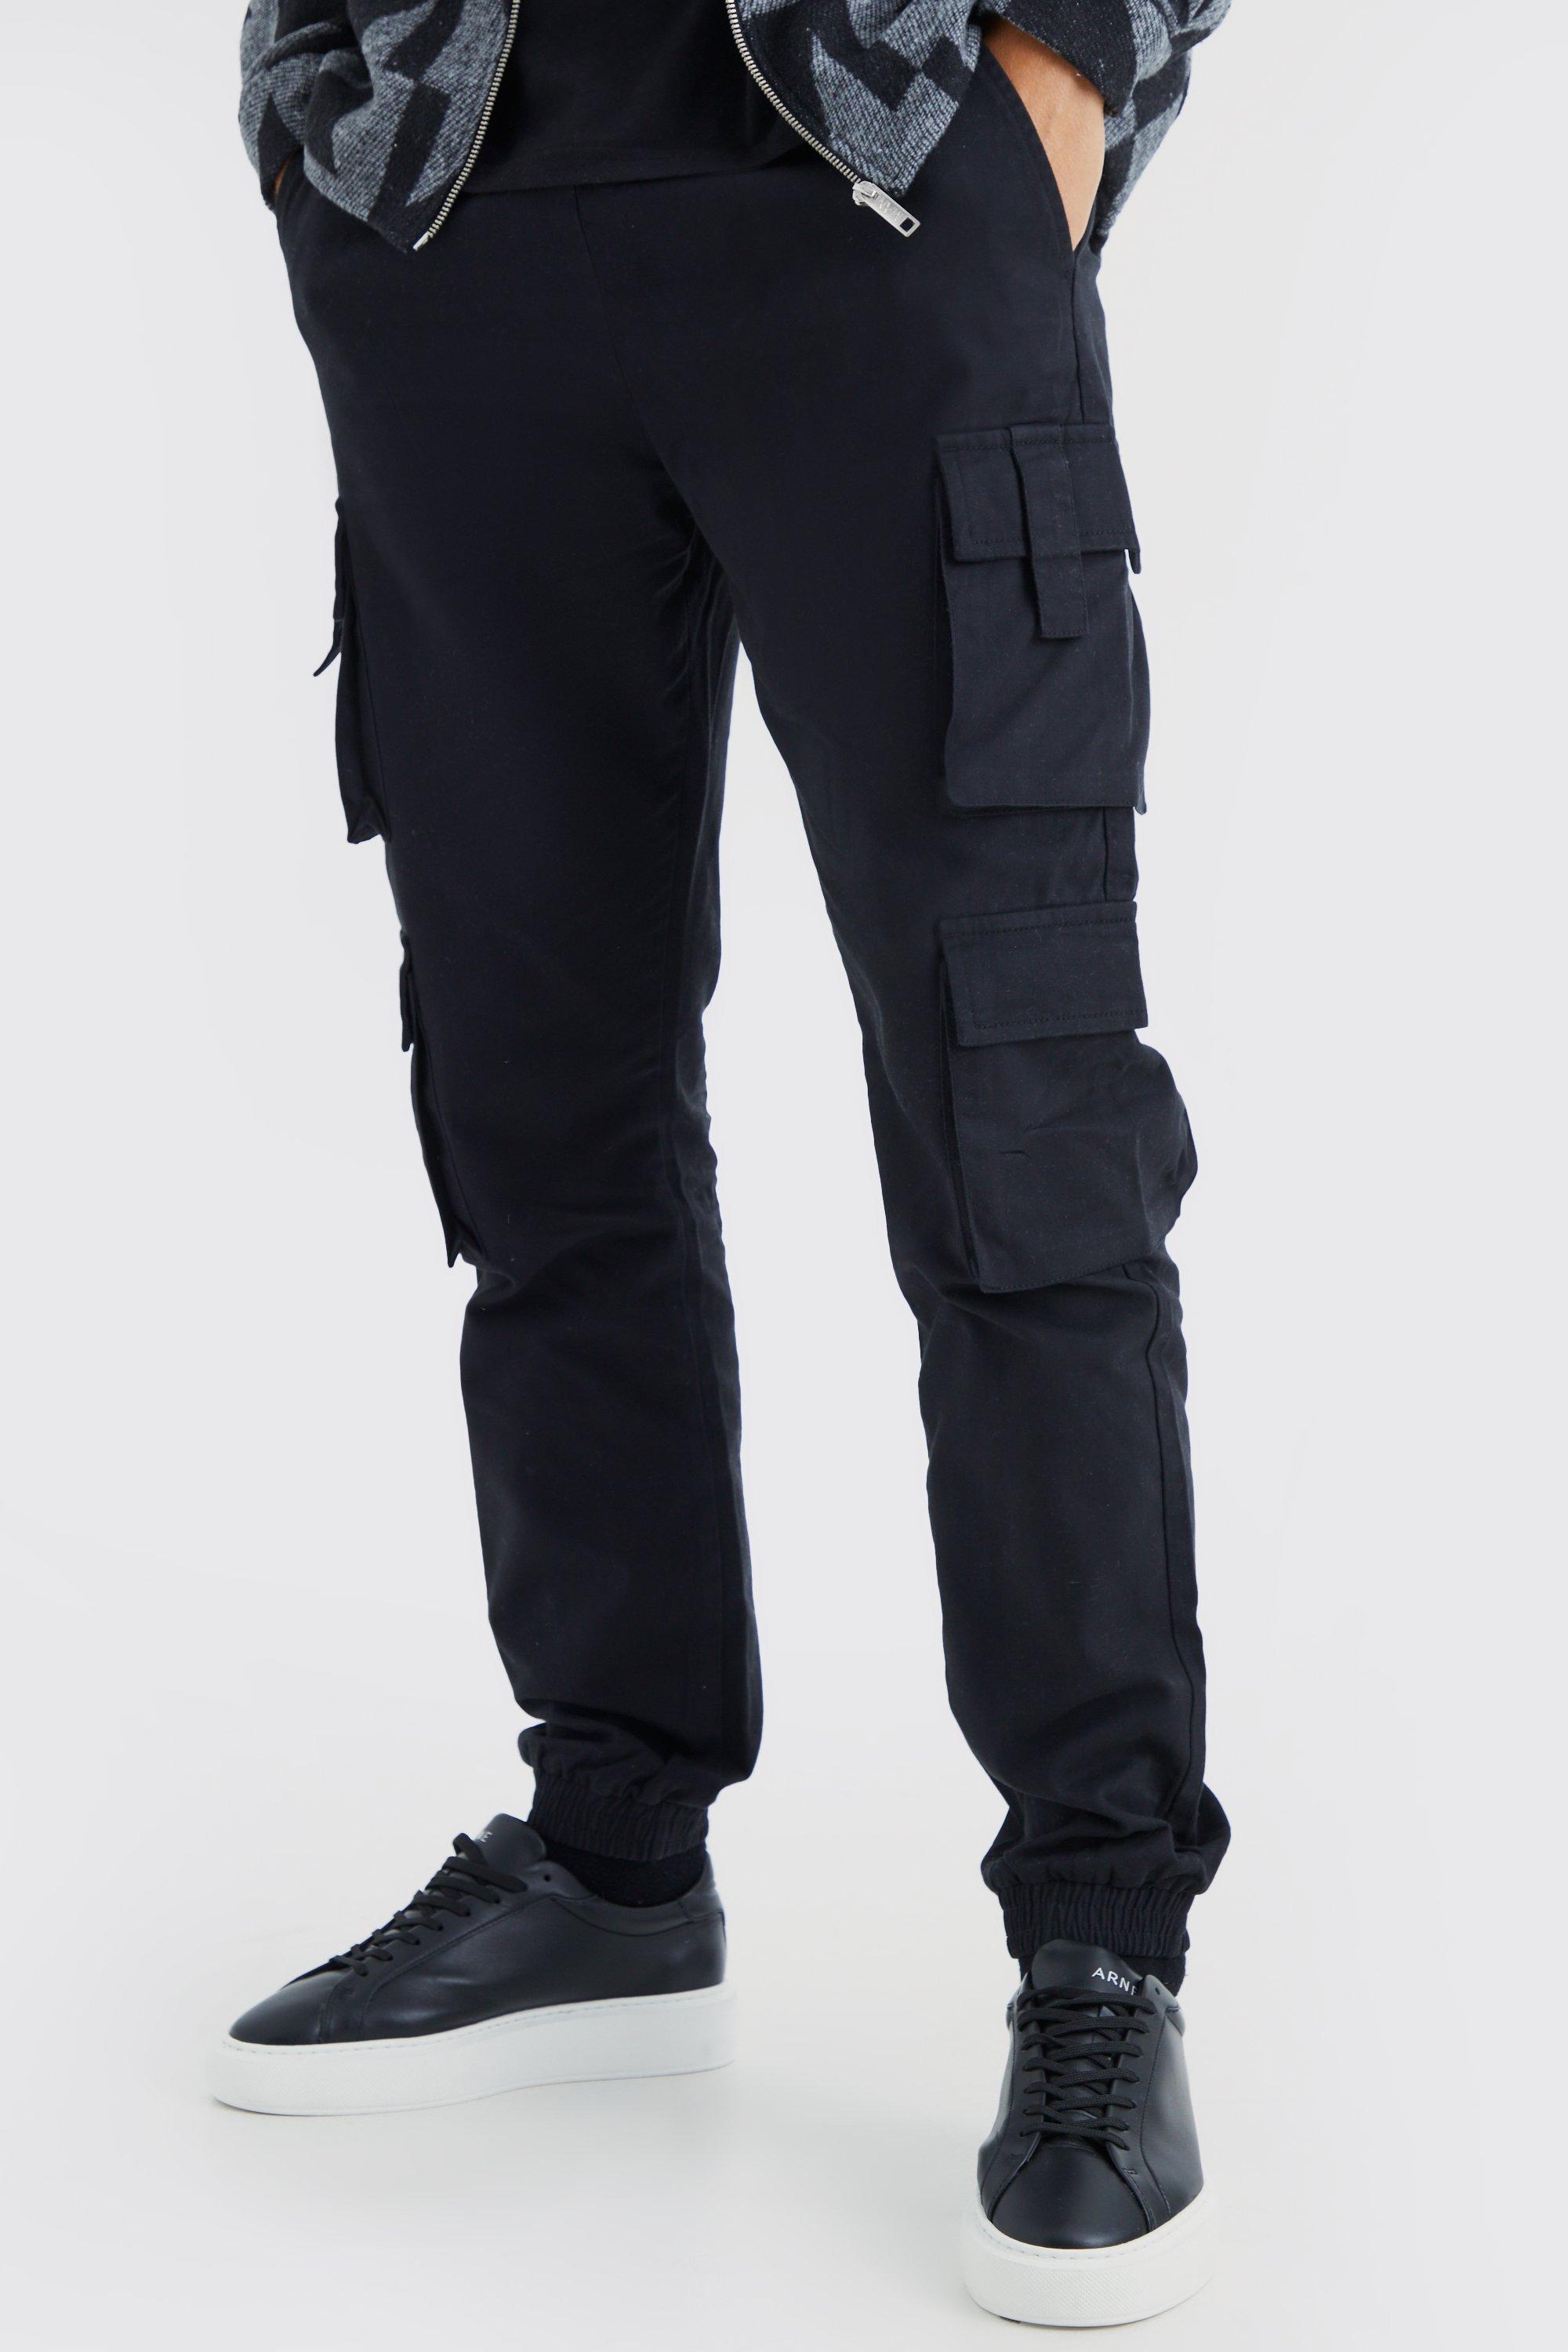 Image of Pantaloni tuta Tall Slim Fit con tasche Cargo e vita elasticizzata, Nero